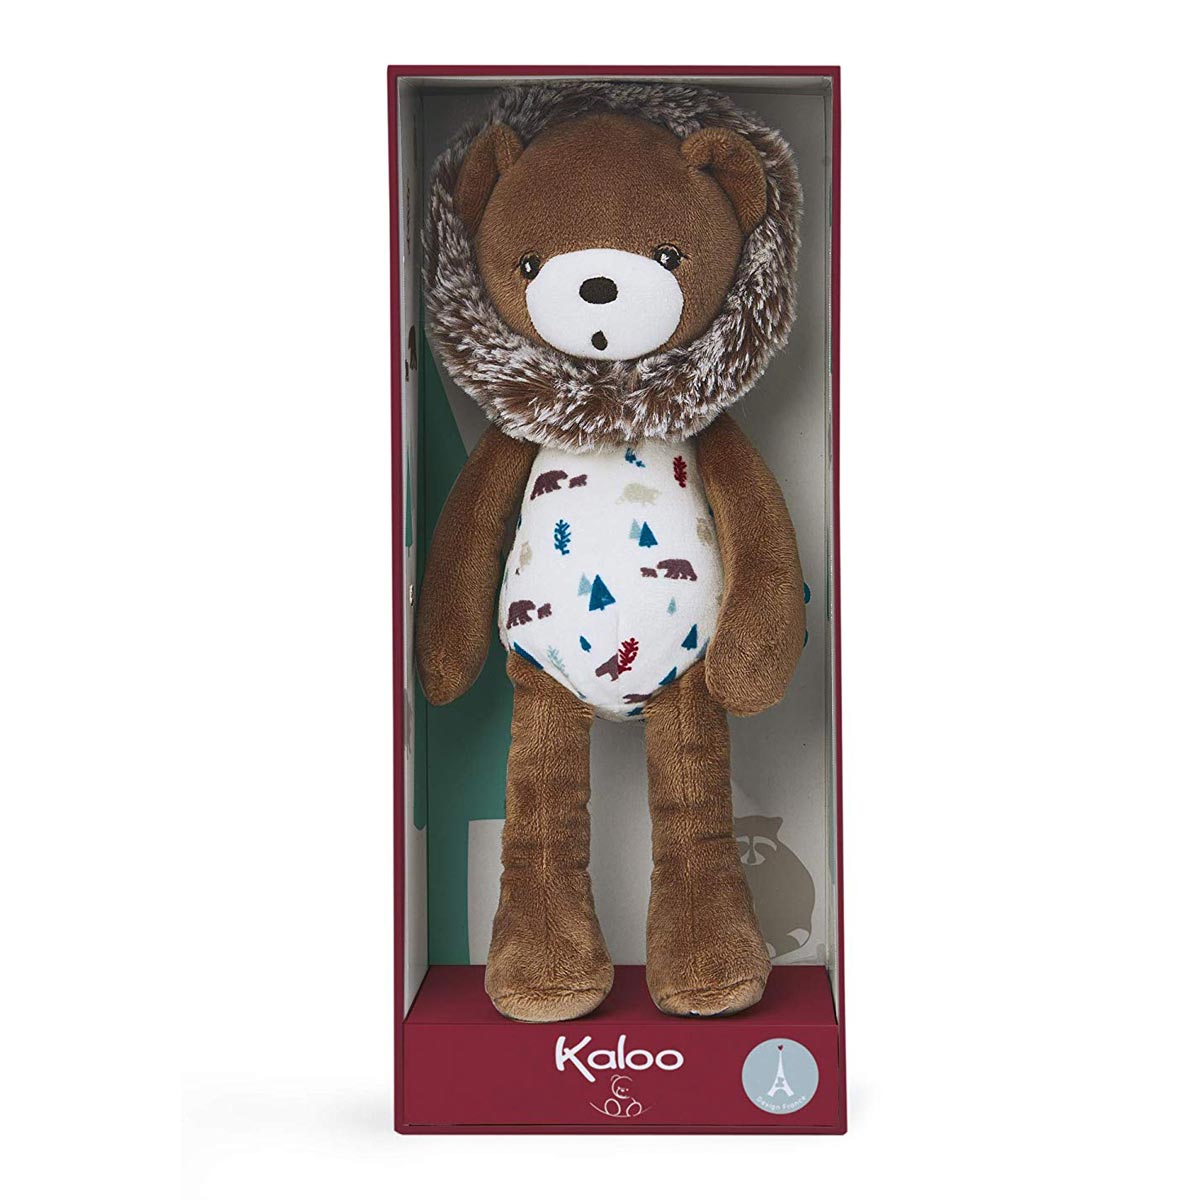 Kaloo Gaston the Teddy Bear Small - 27 cm